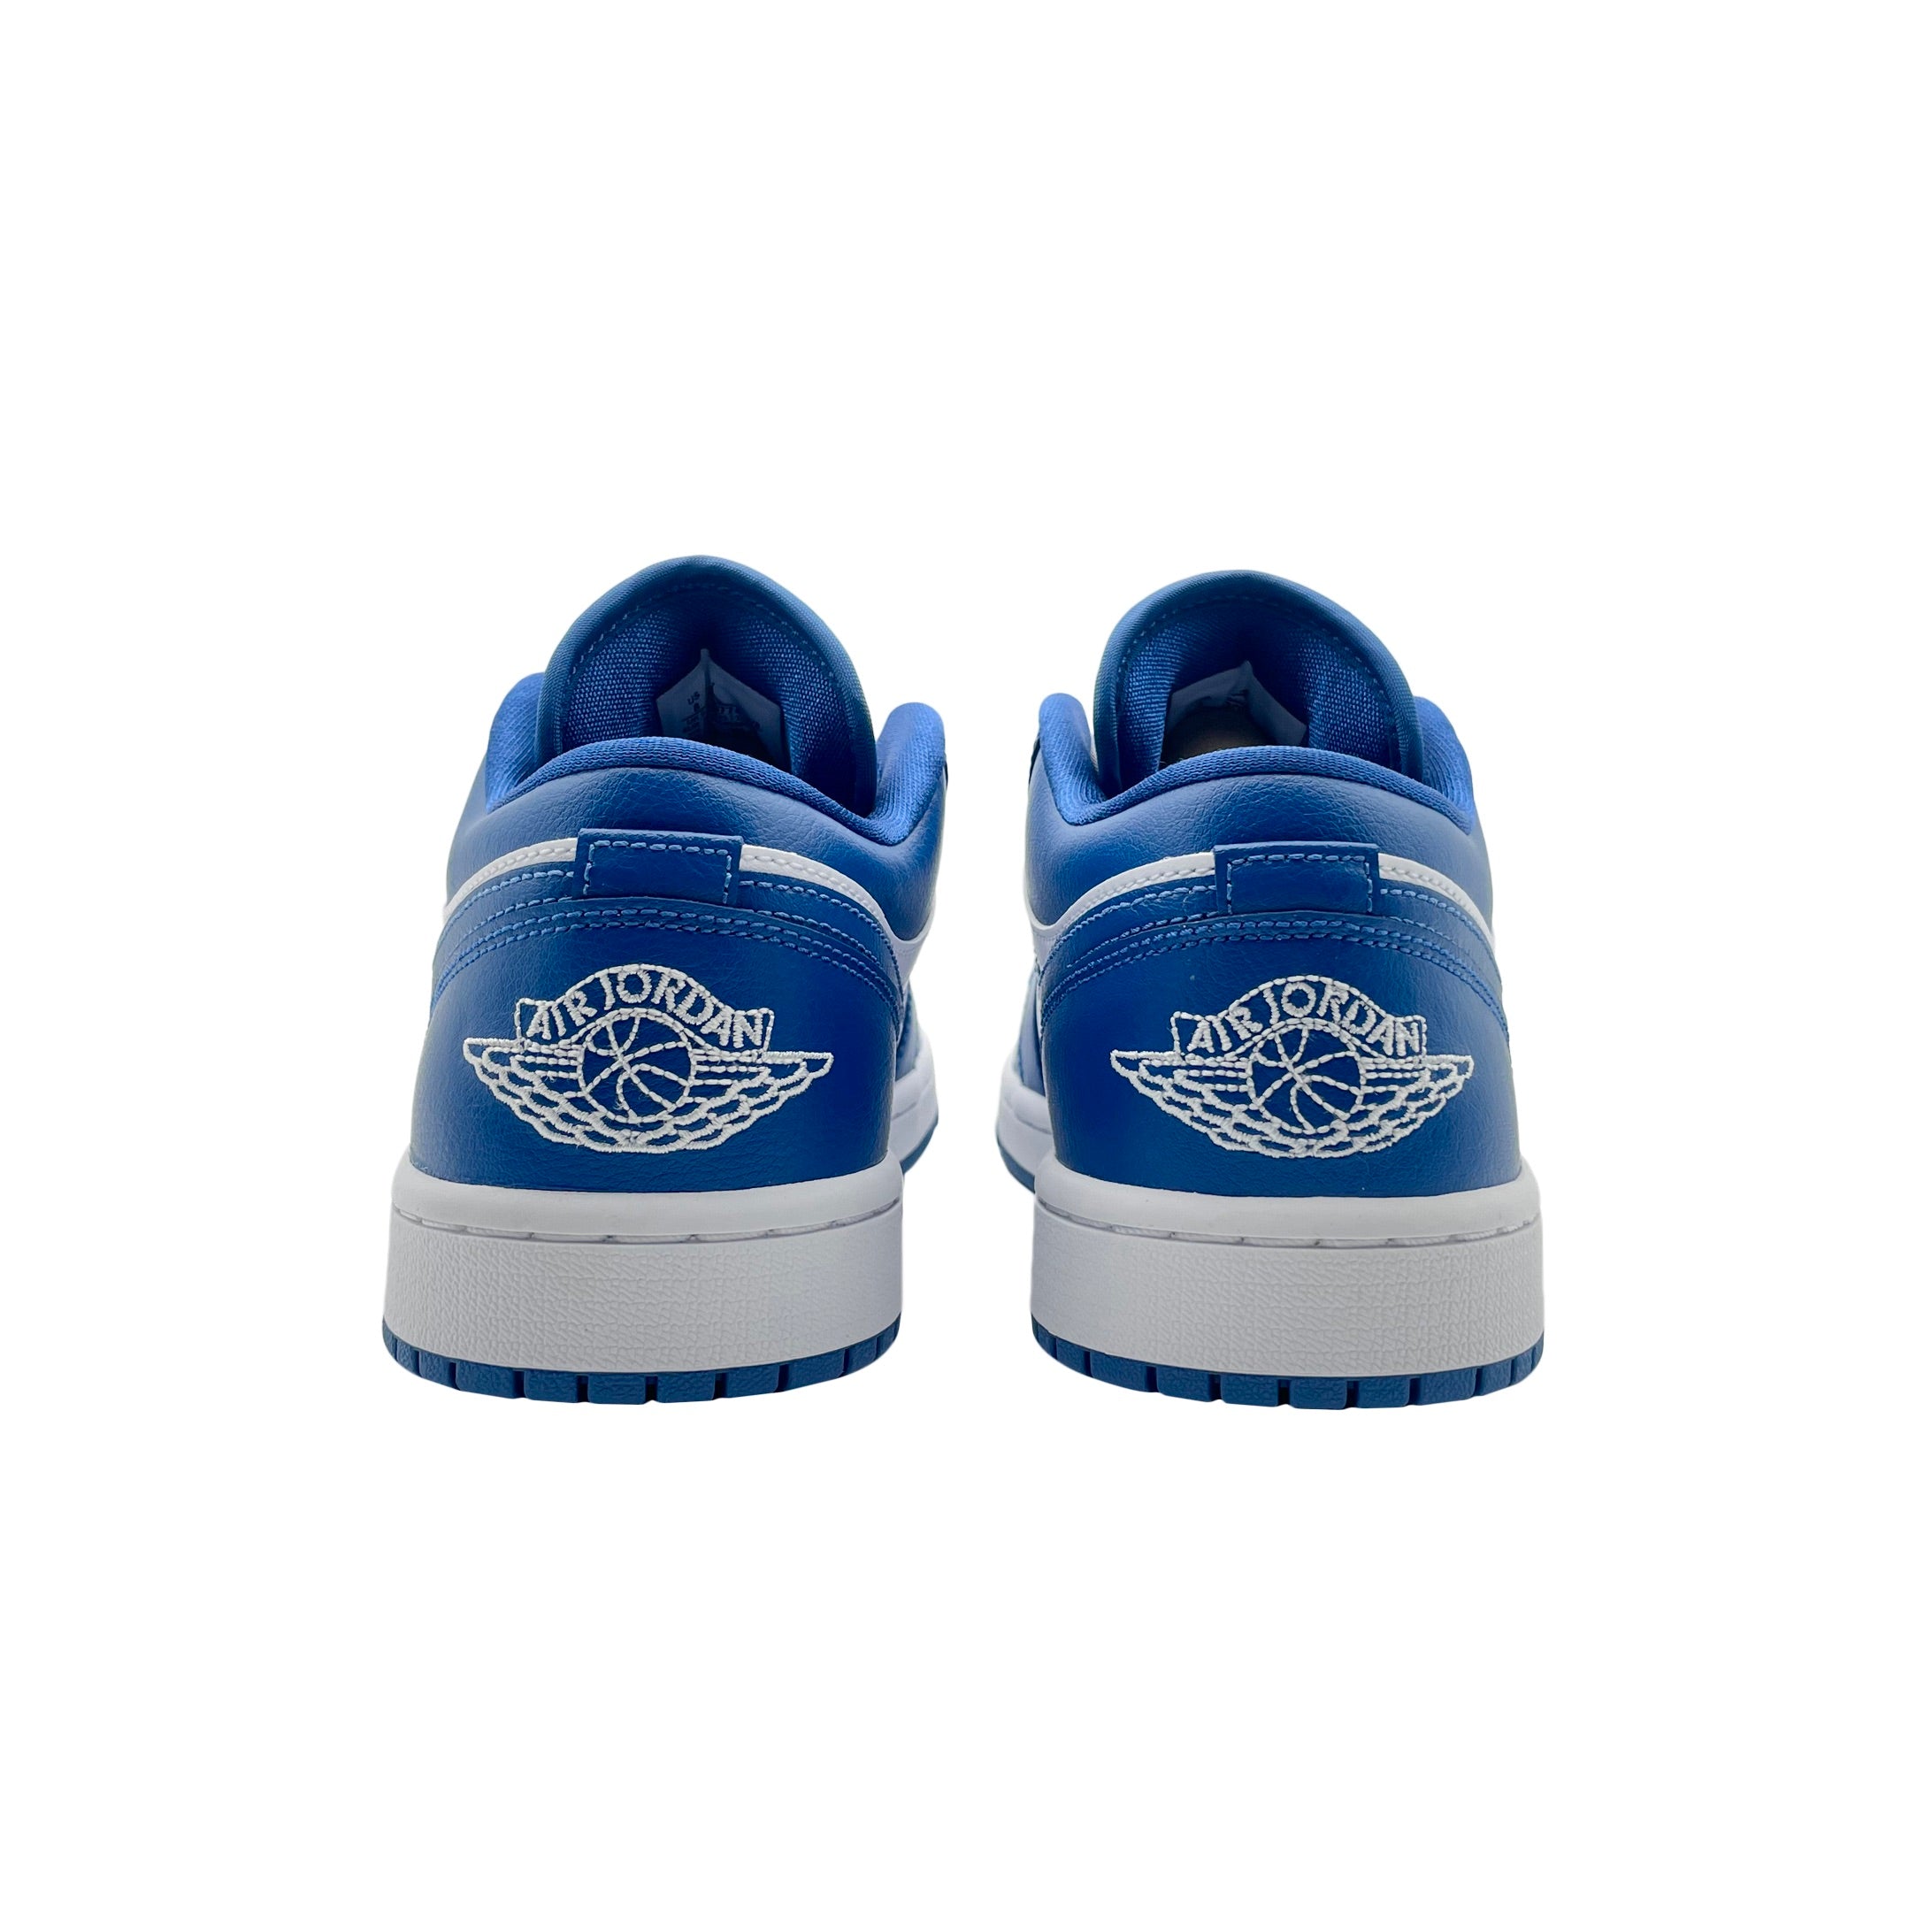 Nike Wmns Air Jordan 1 Low Marina Blue